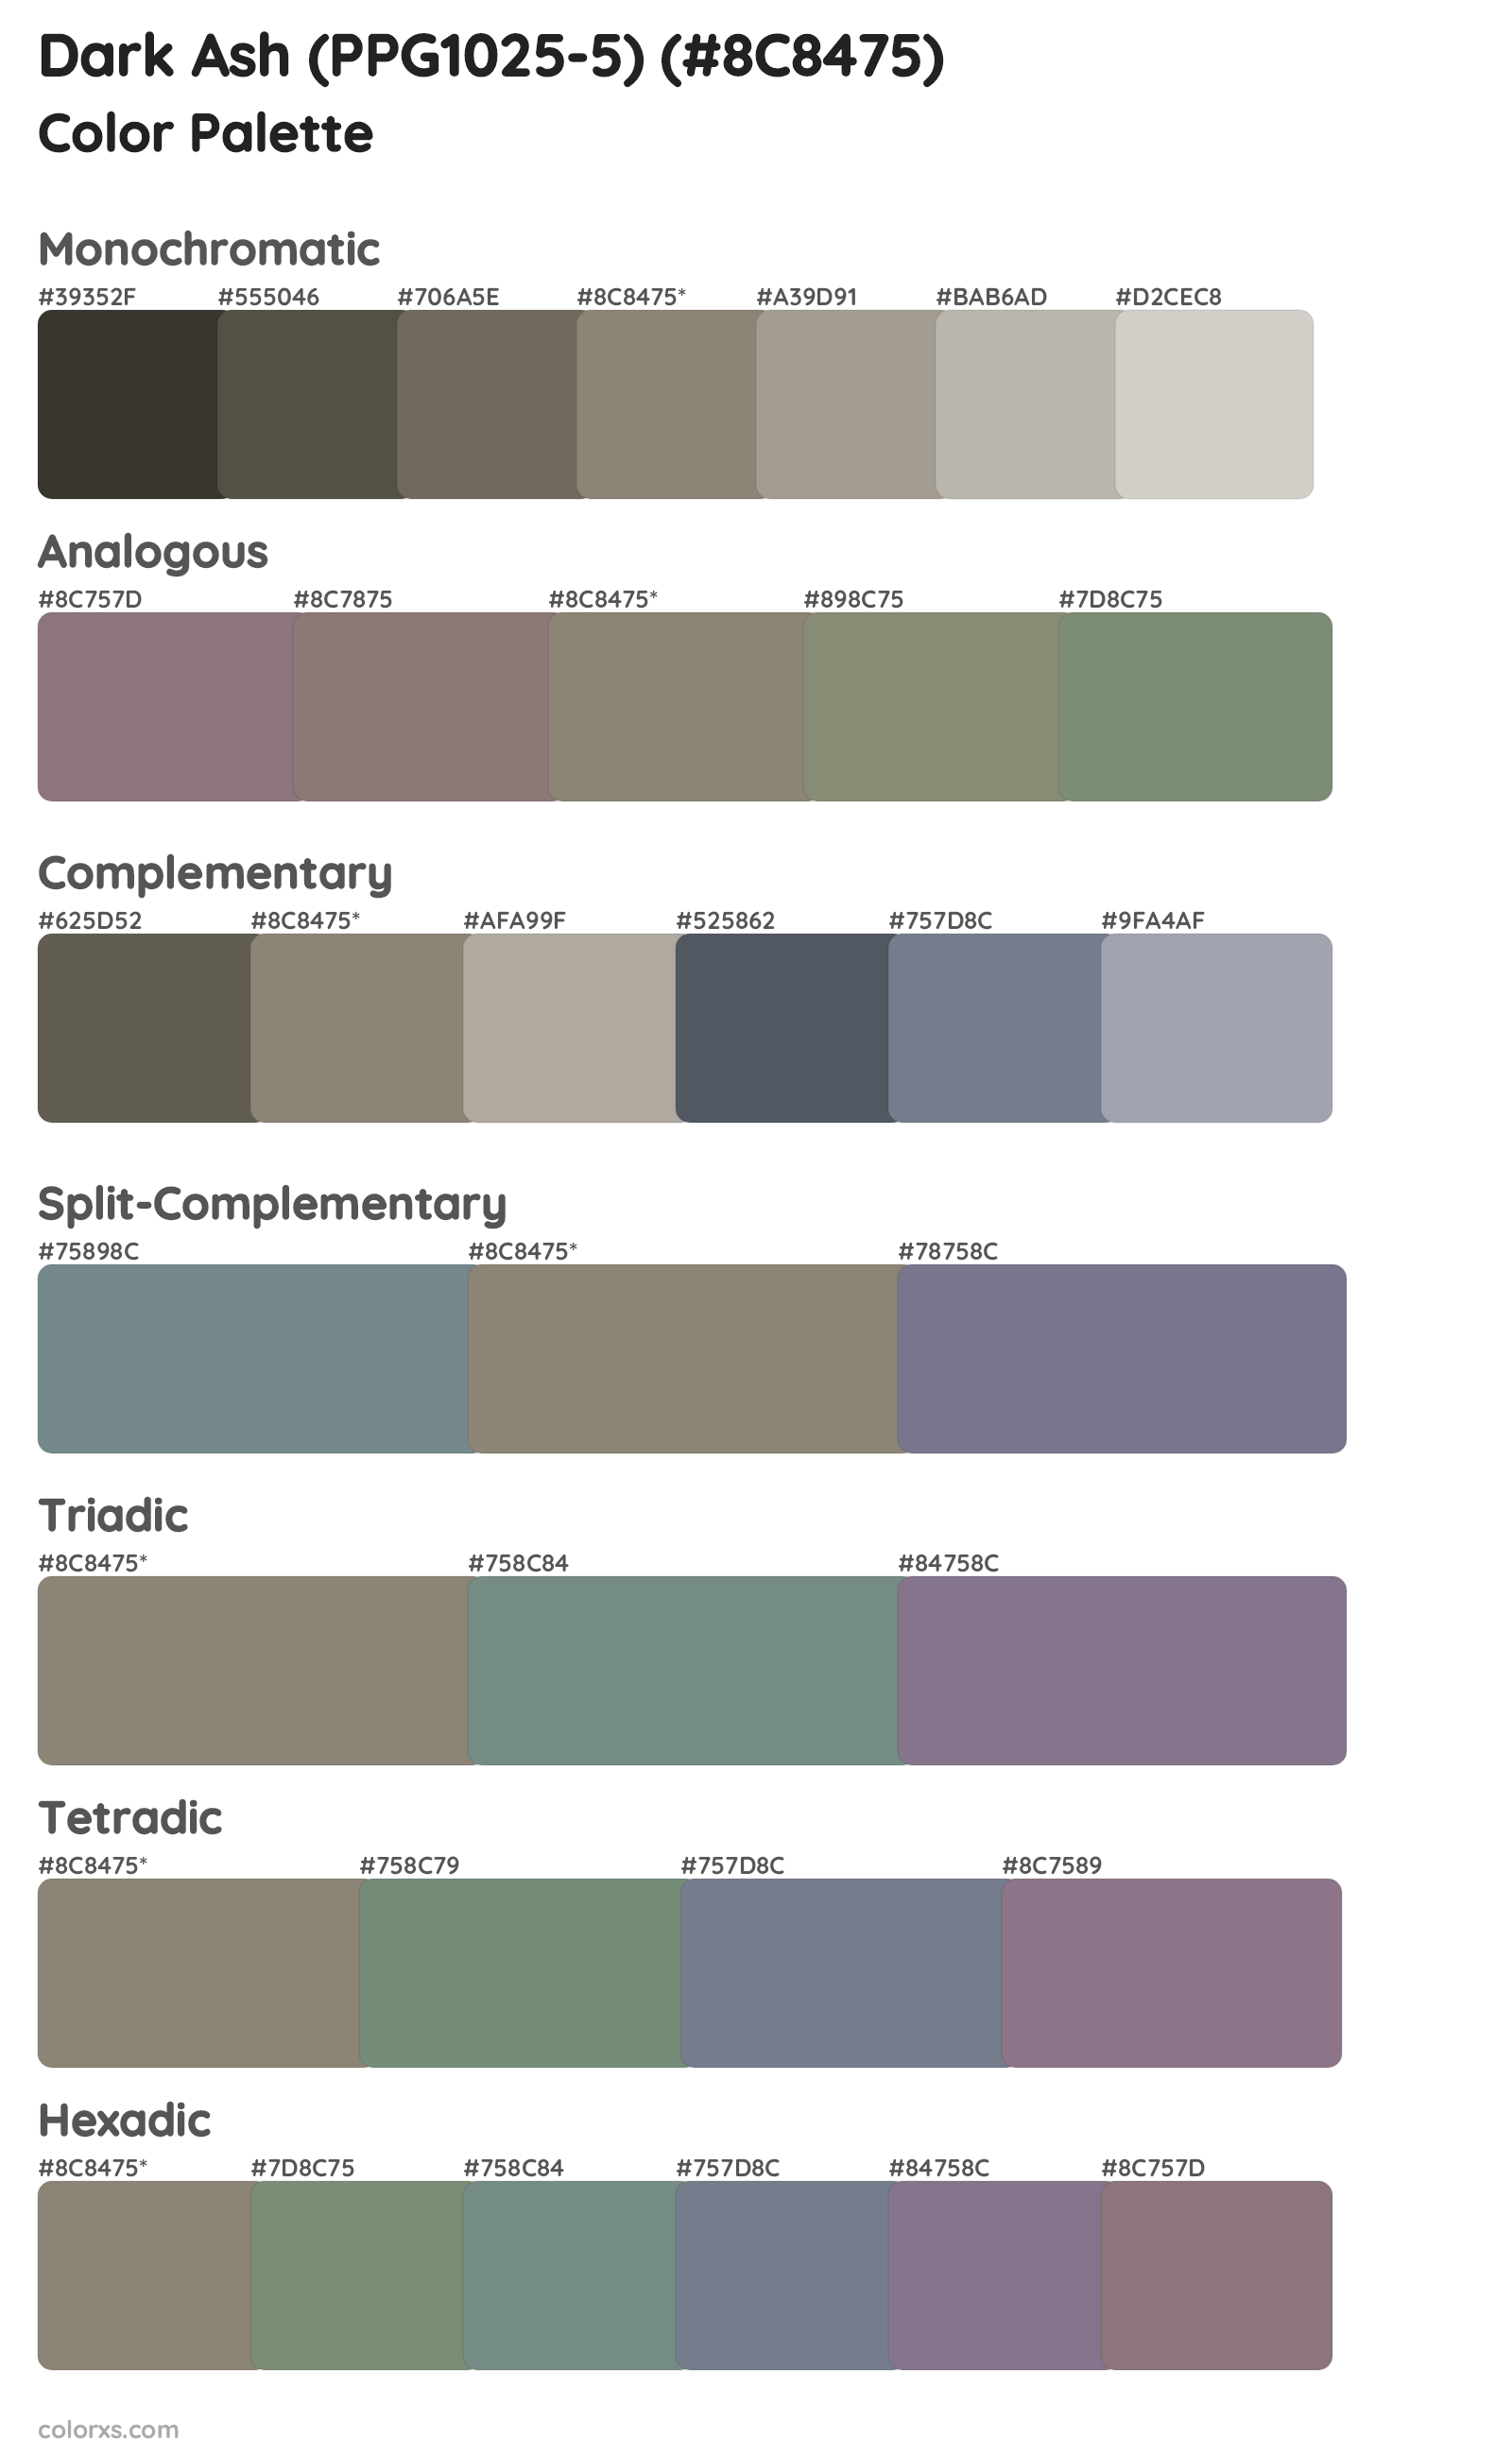 Dark Ash (PPG1025-5) Color Scheme Palettes